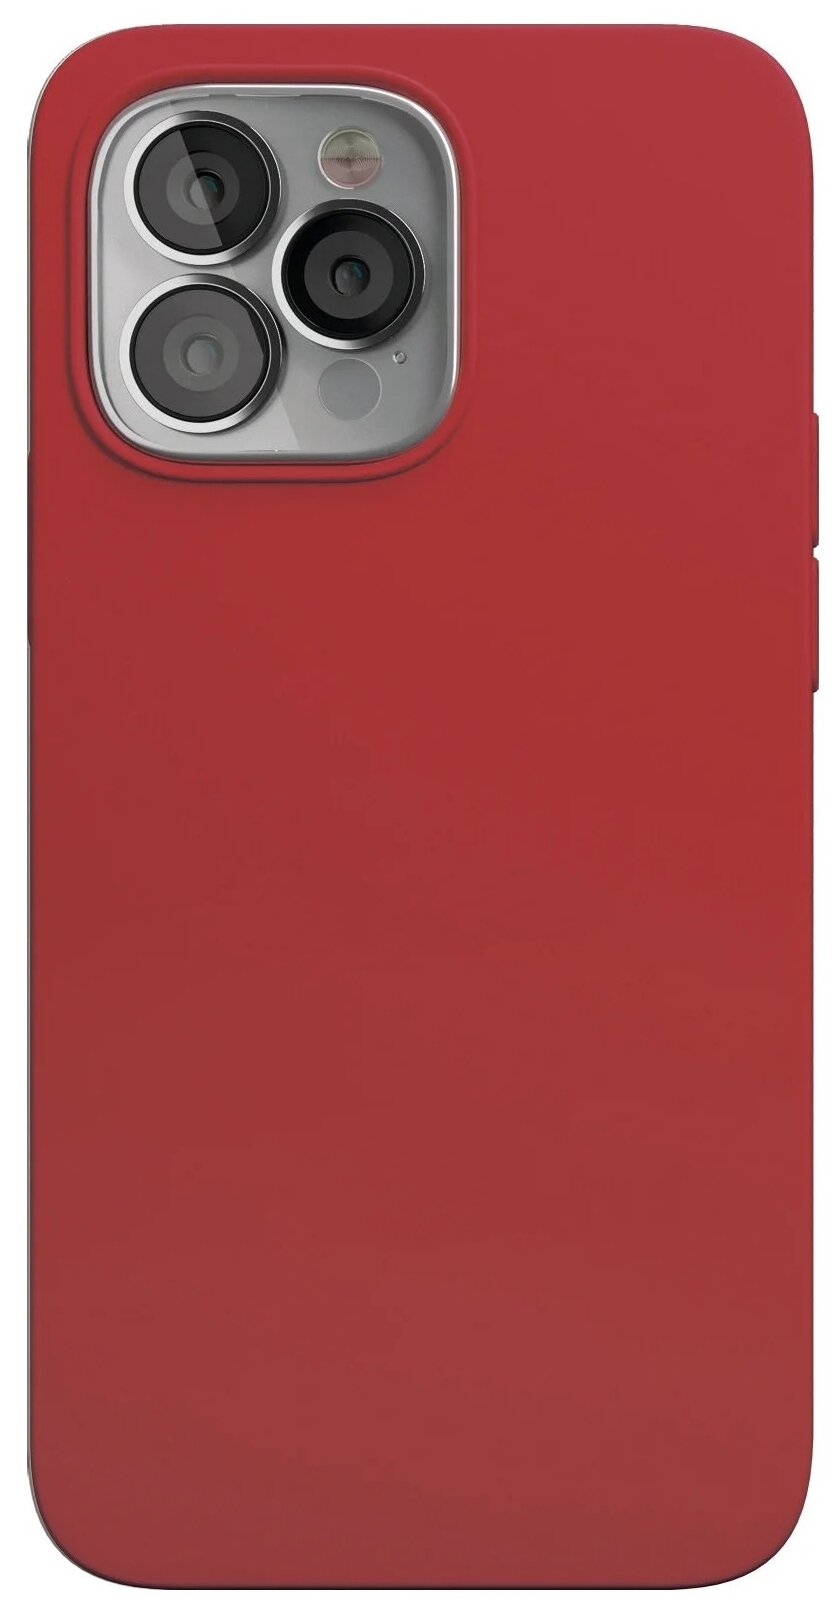 Чехол для смартфона vlp Silicone case with MagSafe для iPhone 13 Pro, красный